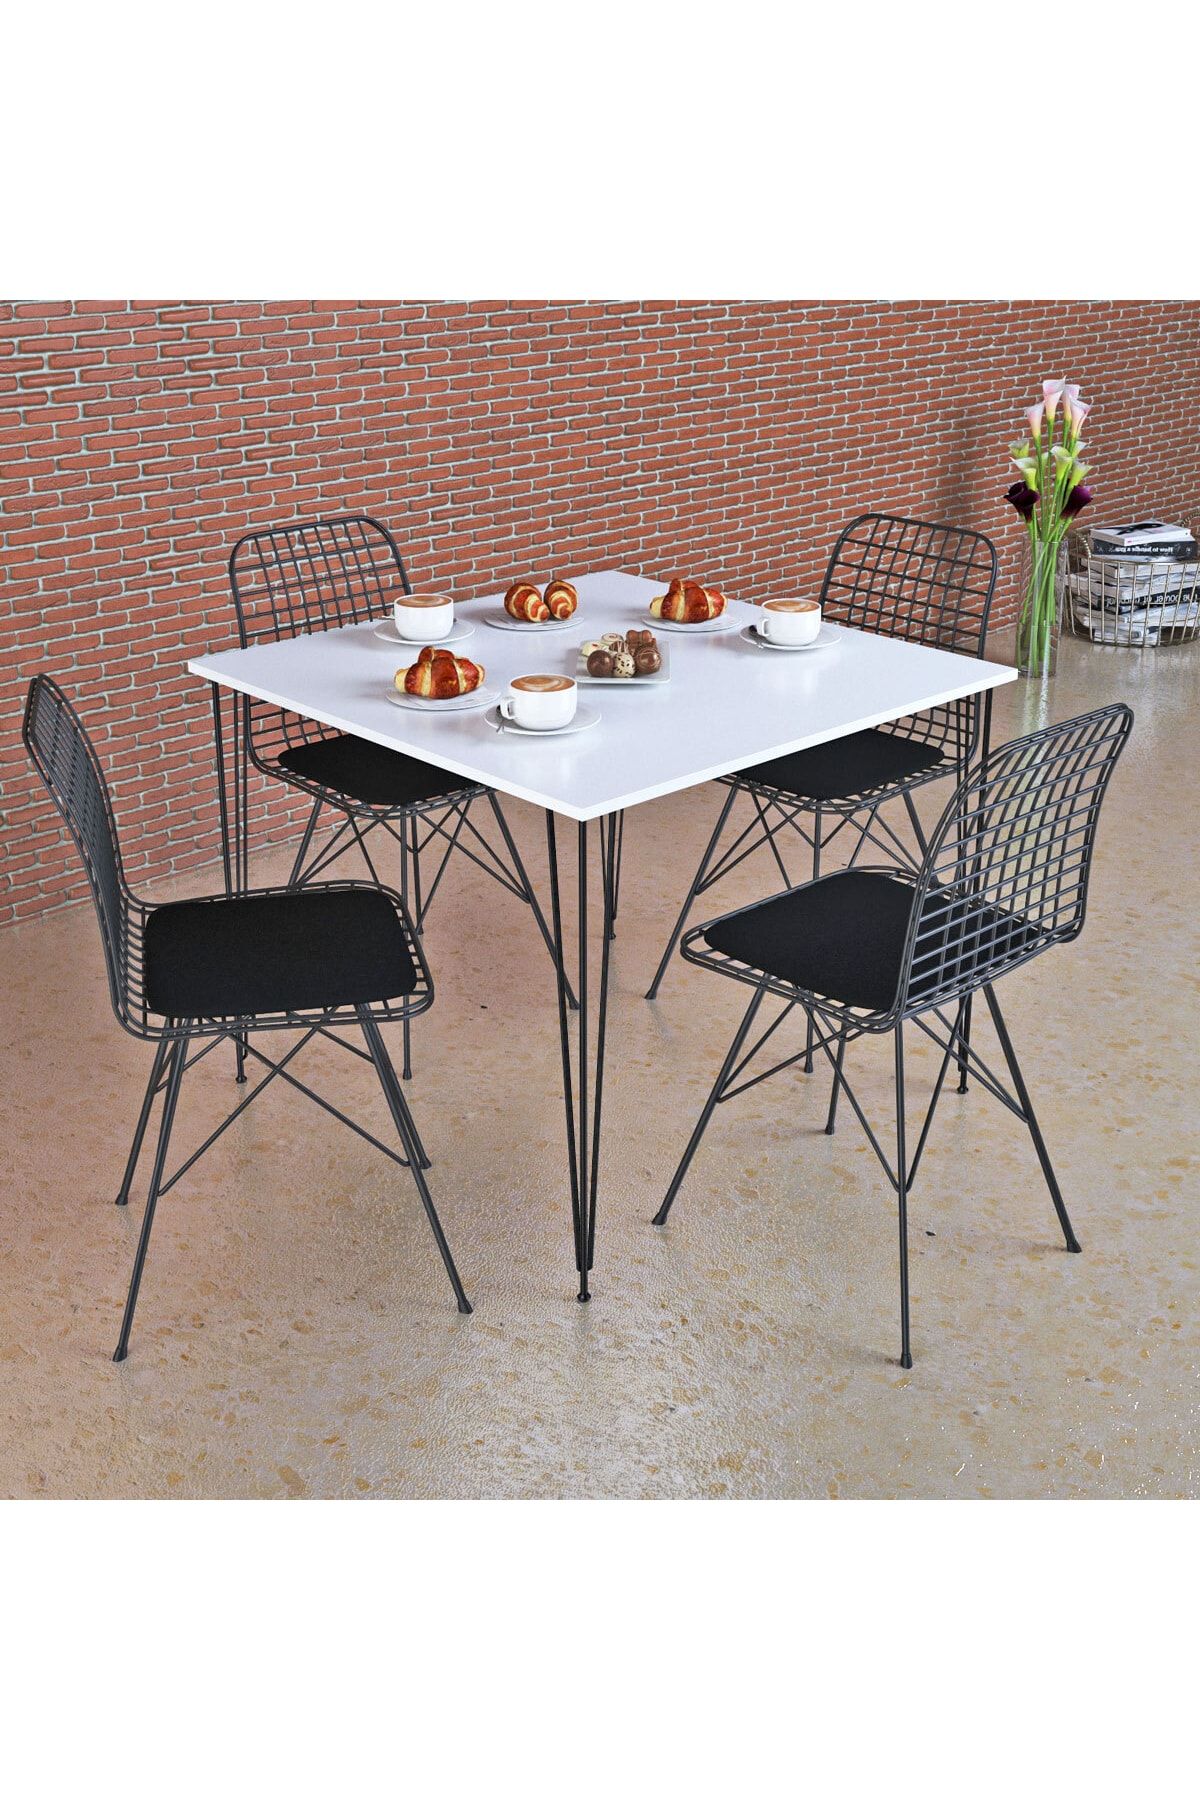 Kef Beyaz Masa Takımı, 70x70cm, 4 Sandalyeli